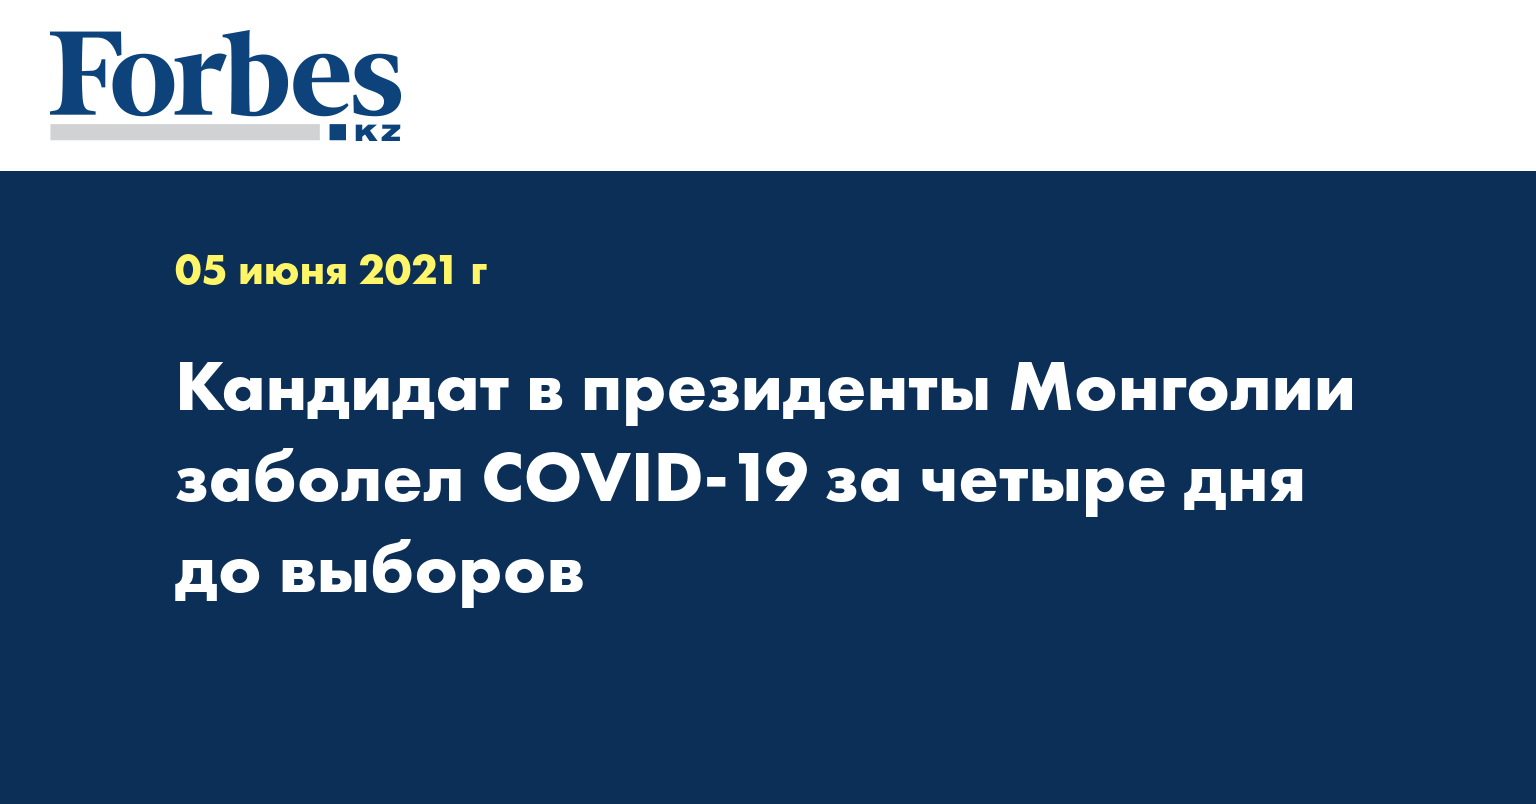 Кандидат в президенты Монголии заболел COVID-19 за четыре дня до выборов